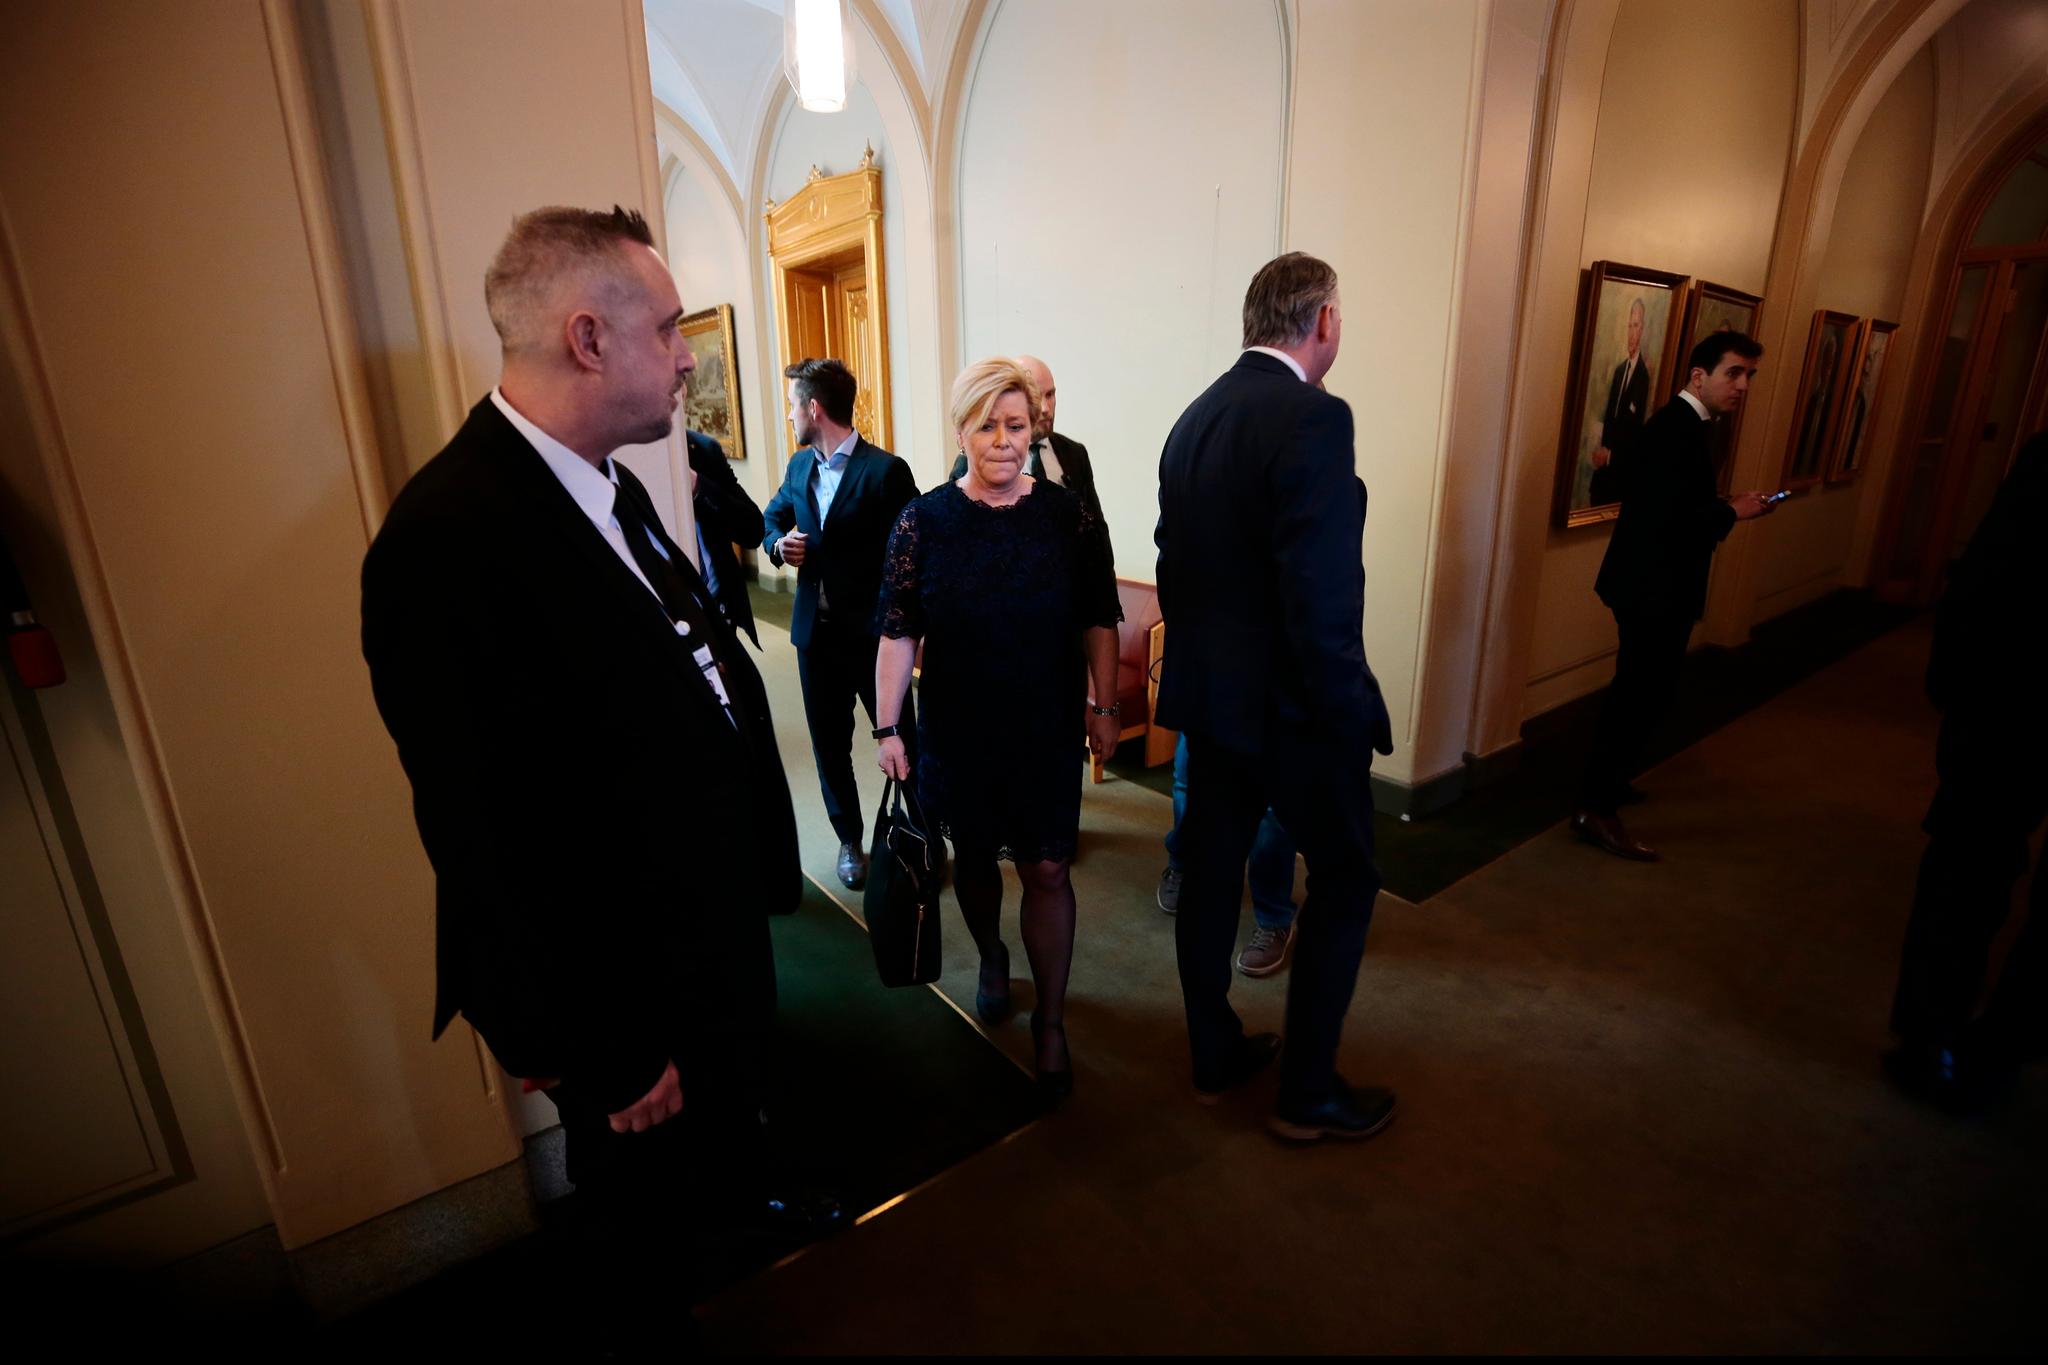  Finansminister og Frp-leder Siv Jensen var, i likhet med de fleste andre i toppen av norsk politikk, til stede i Stortinget tirsdag formiddag.  